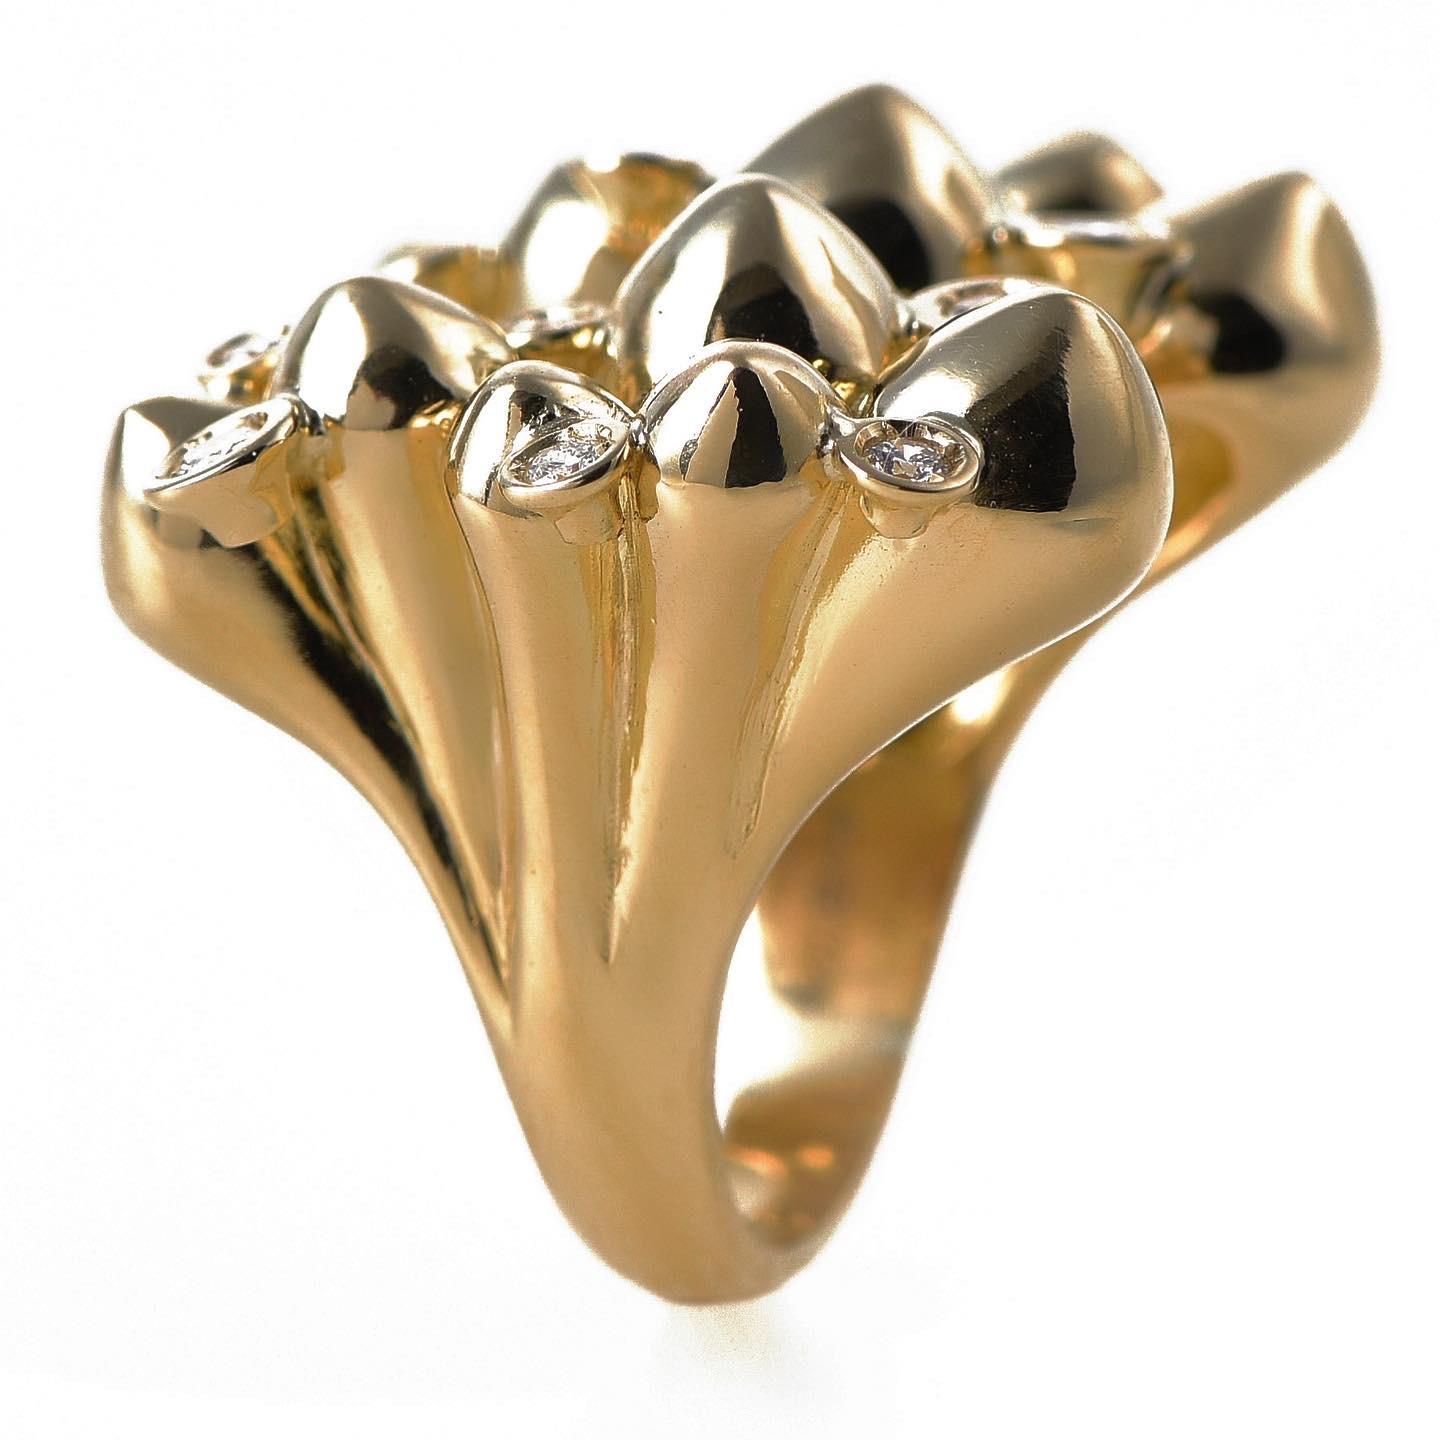 Der Ring 'Spike cluster' ist meisterhaft von Hand geformt und in 18 Karat Gelbgold gefertigt und in Zypern gestempelt. Dieser beeindruckende und robuste, offene Statement-Ring ist hochglanzpoliert,  merkmale 0,38 Ct. Weiß V.S. Diamanten und macht